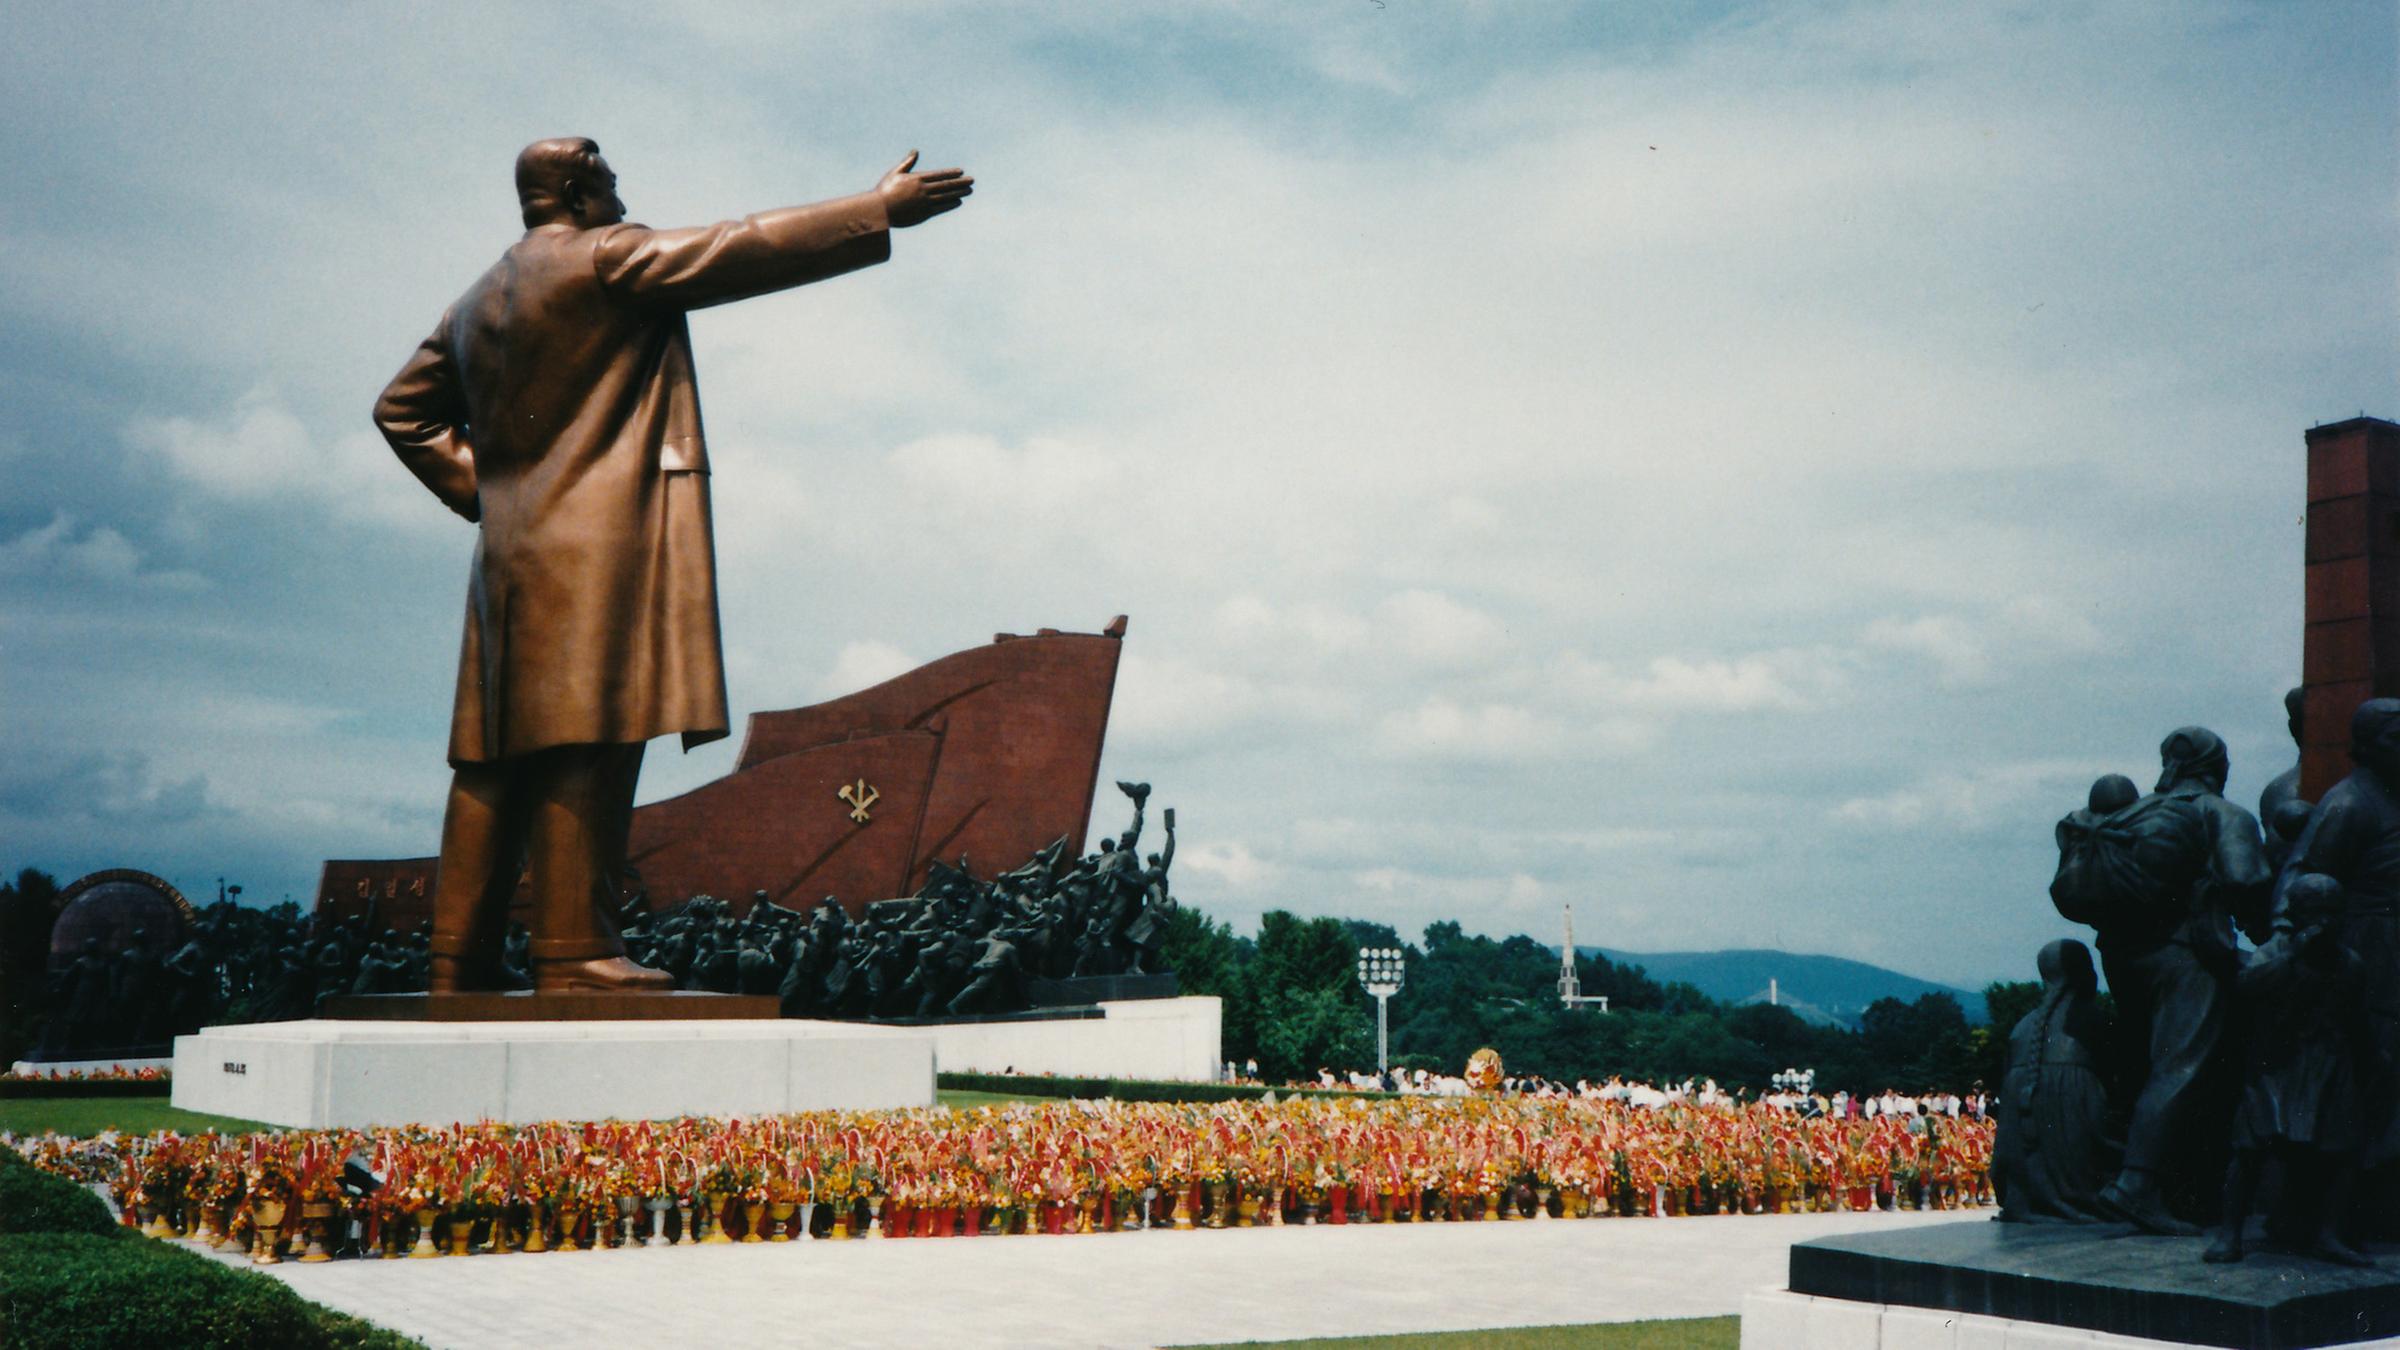 Auf einem Platz steht eine große, bronzefarbene Statue. Vor ihr sind viele Menschen in roter und gelber Uniform versammelt.